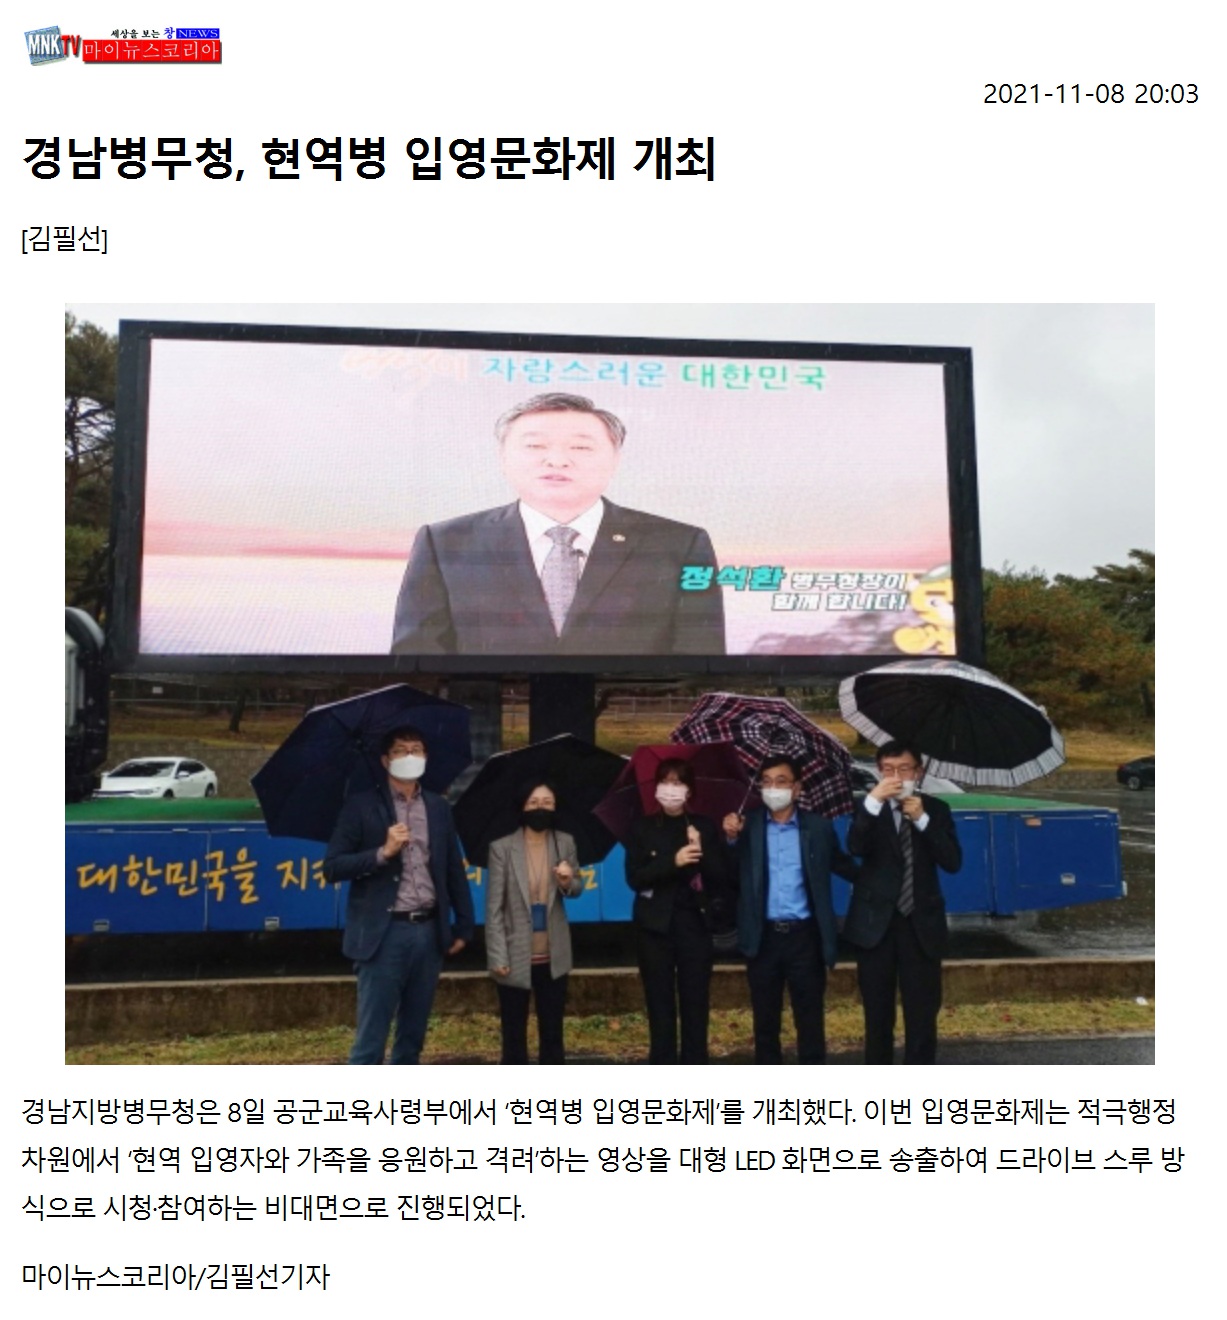 경남지방병무청, 공군 현역병 입영문화제 개최1